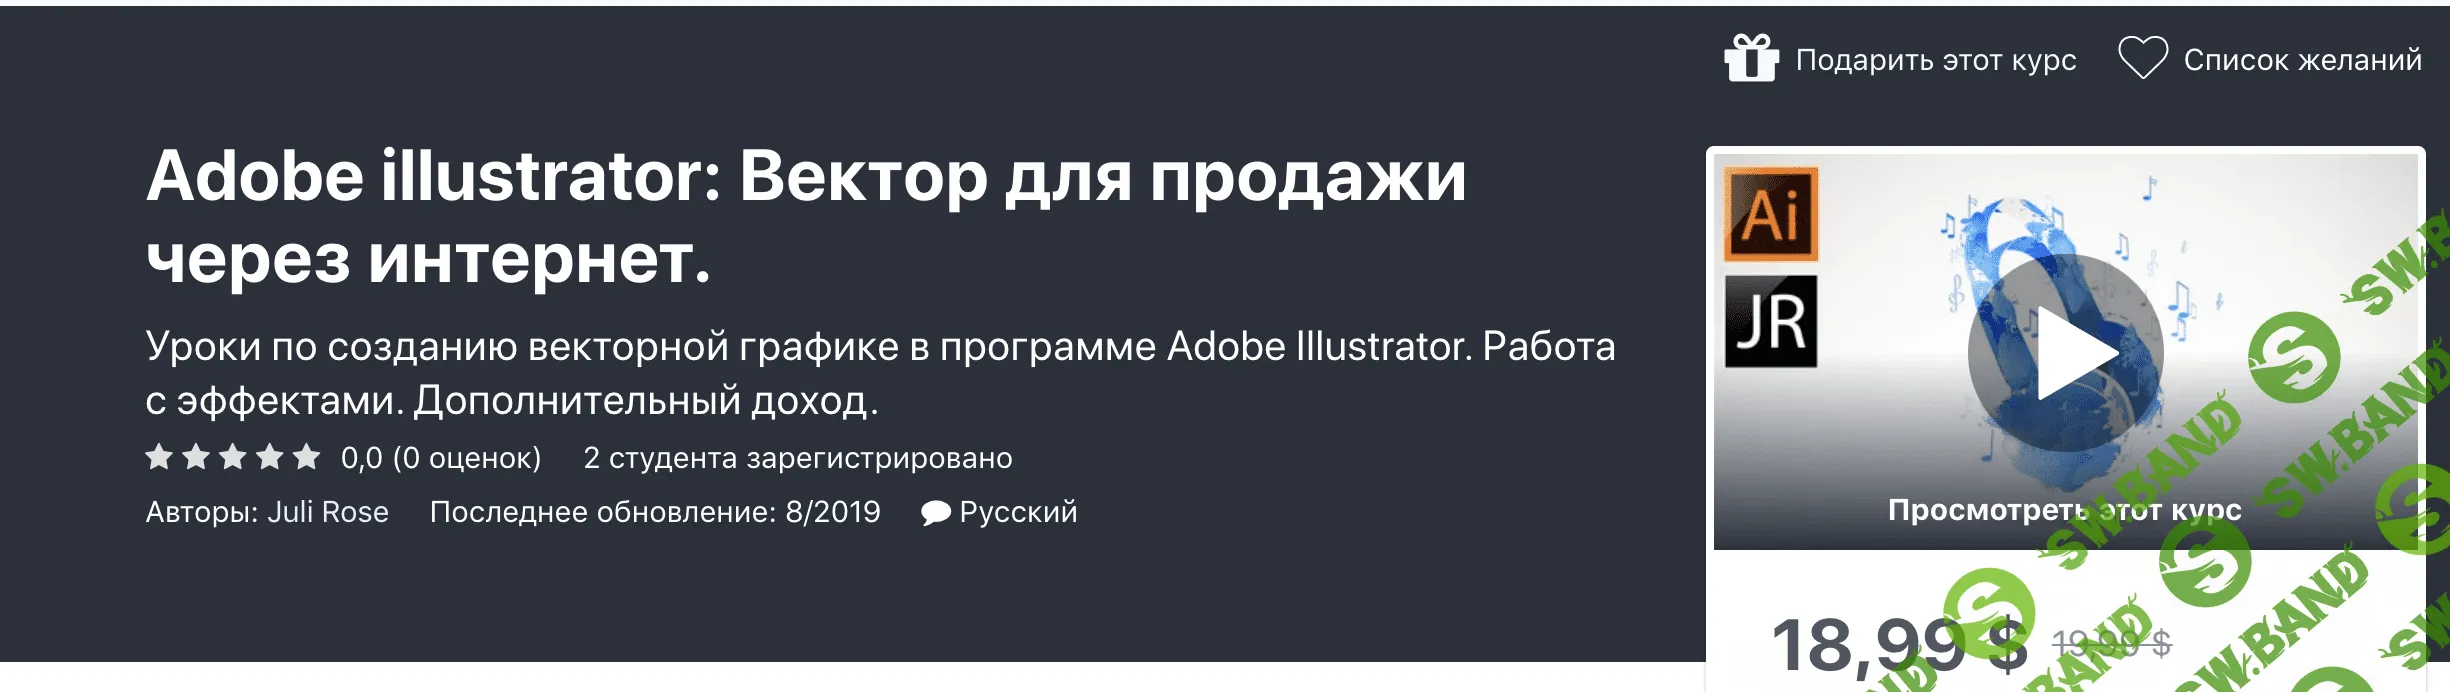 [Udemy] Juli Rose - Adobe illustrator: Вектор для продажи через интернет (2020)